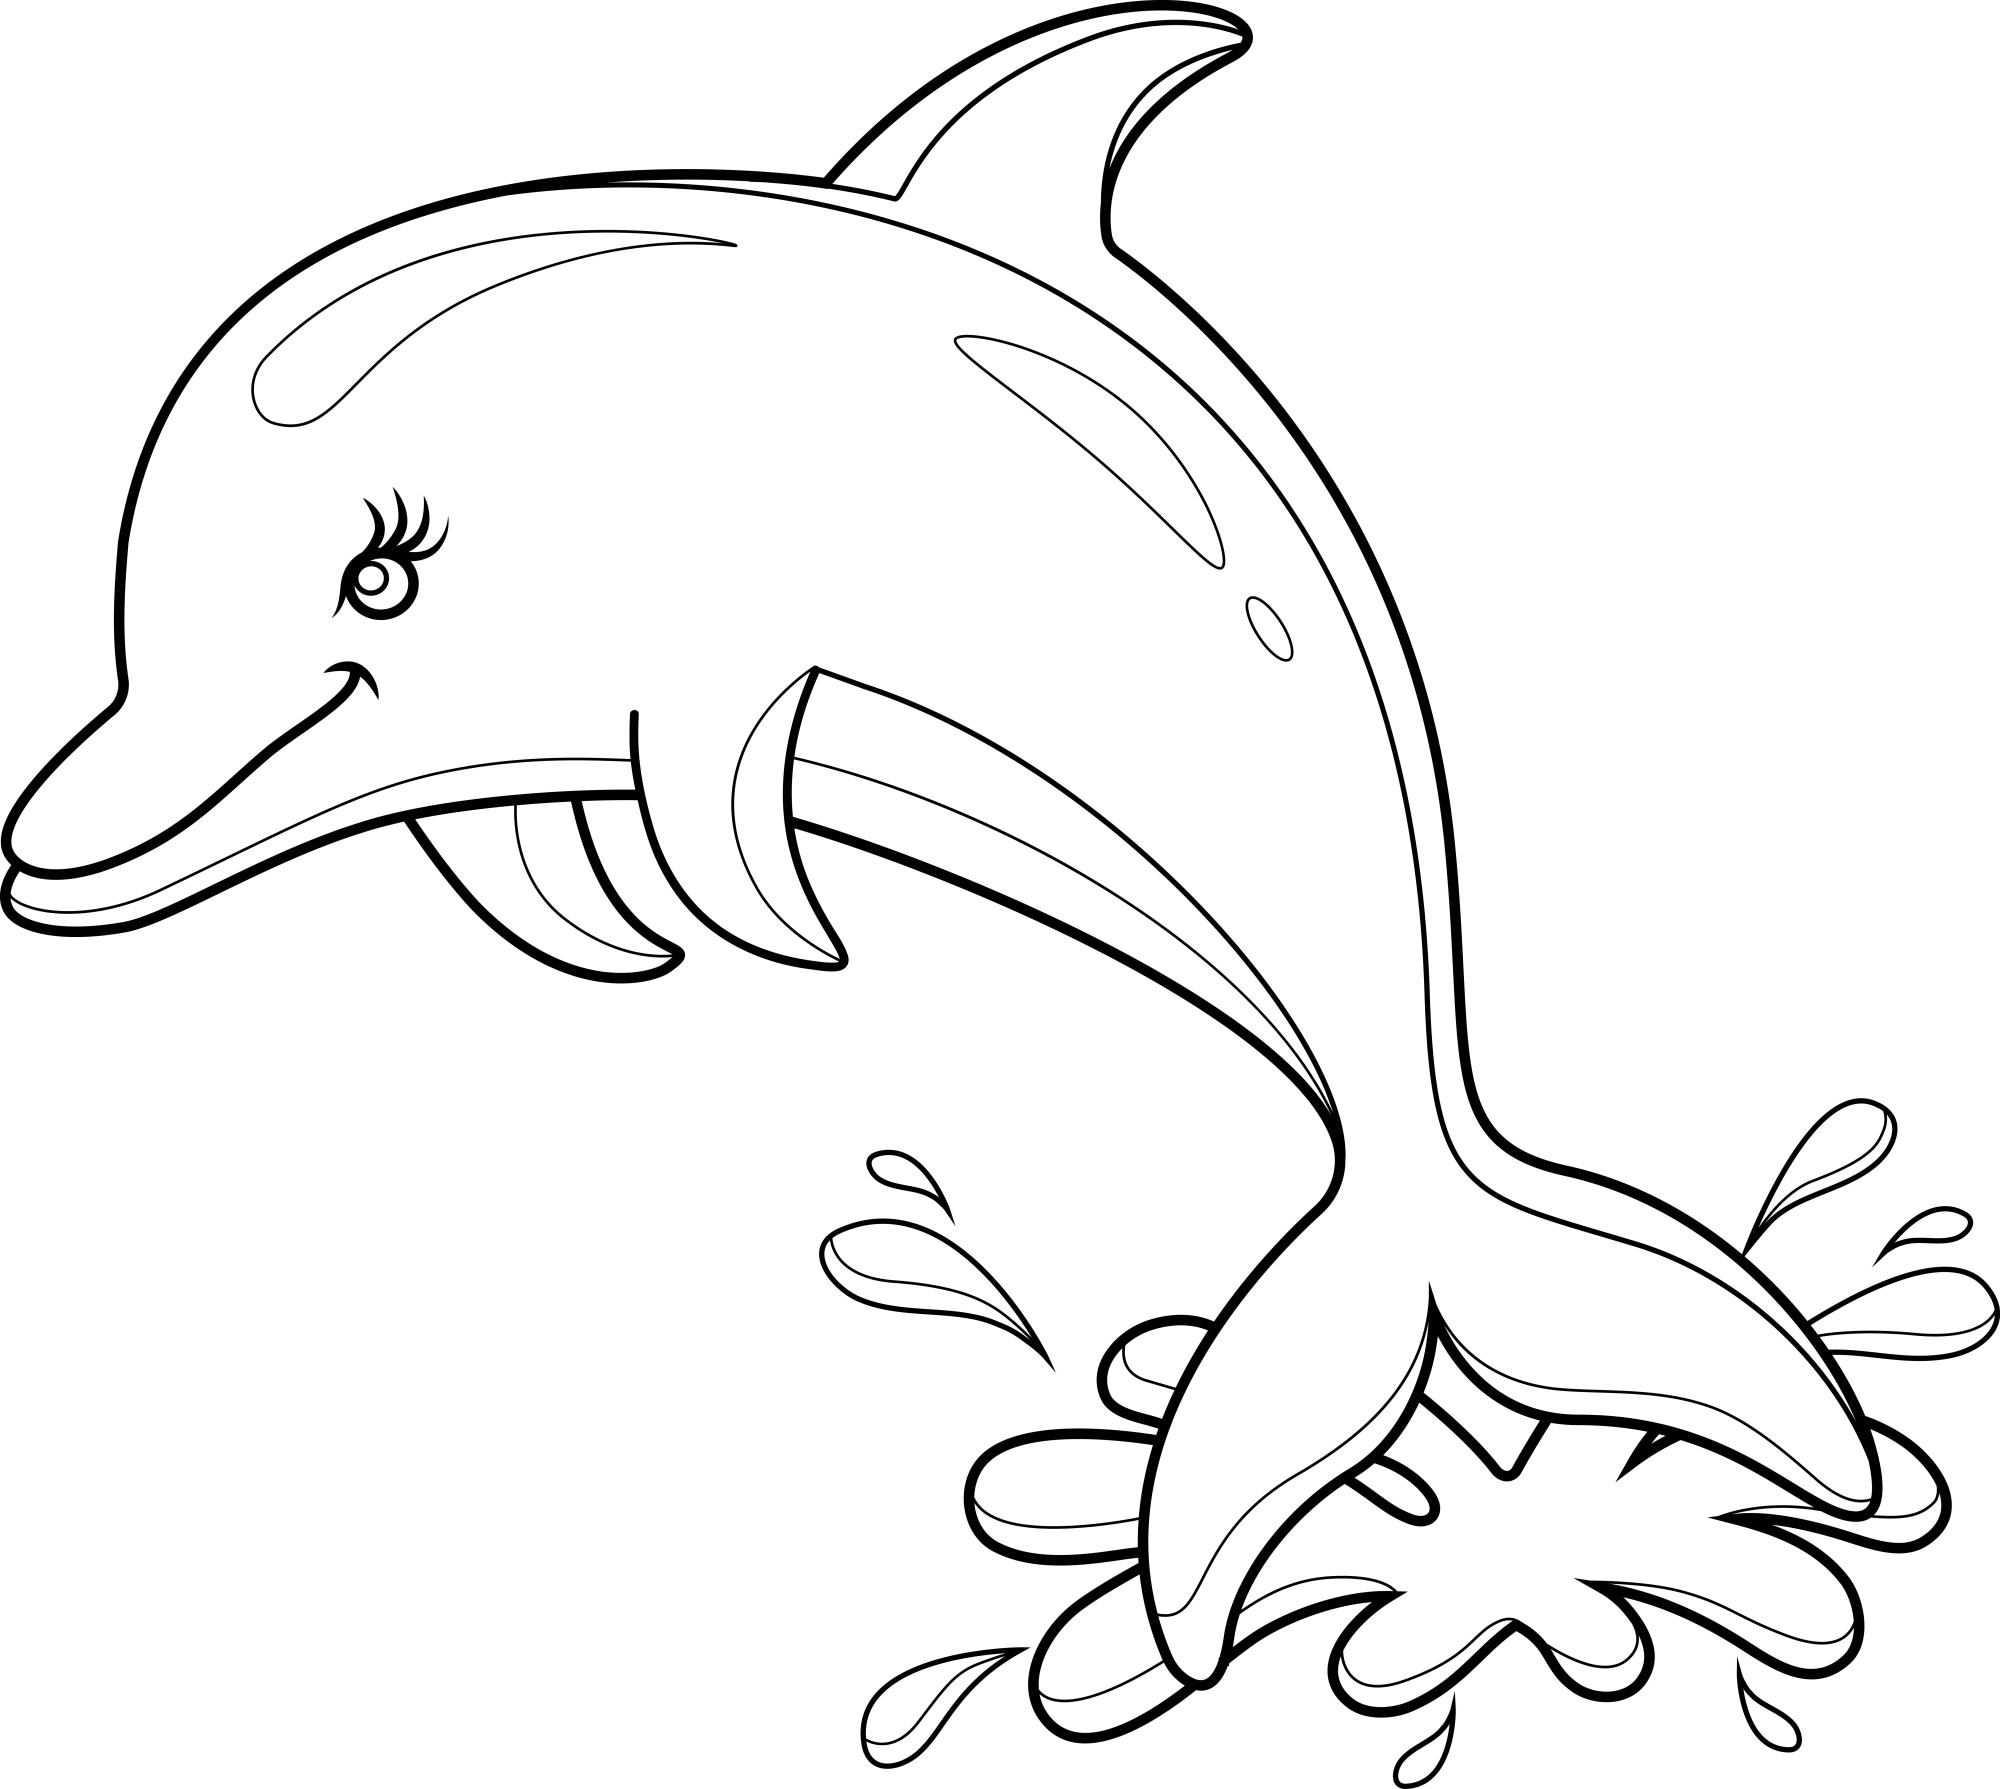 Раскраска для детей: мультяшный дельфин над водой